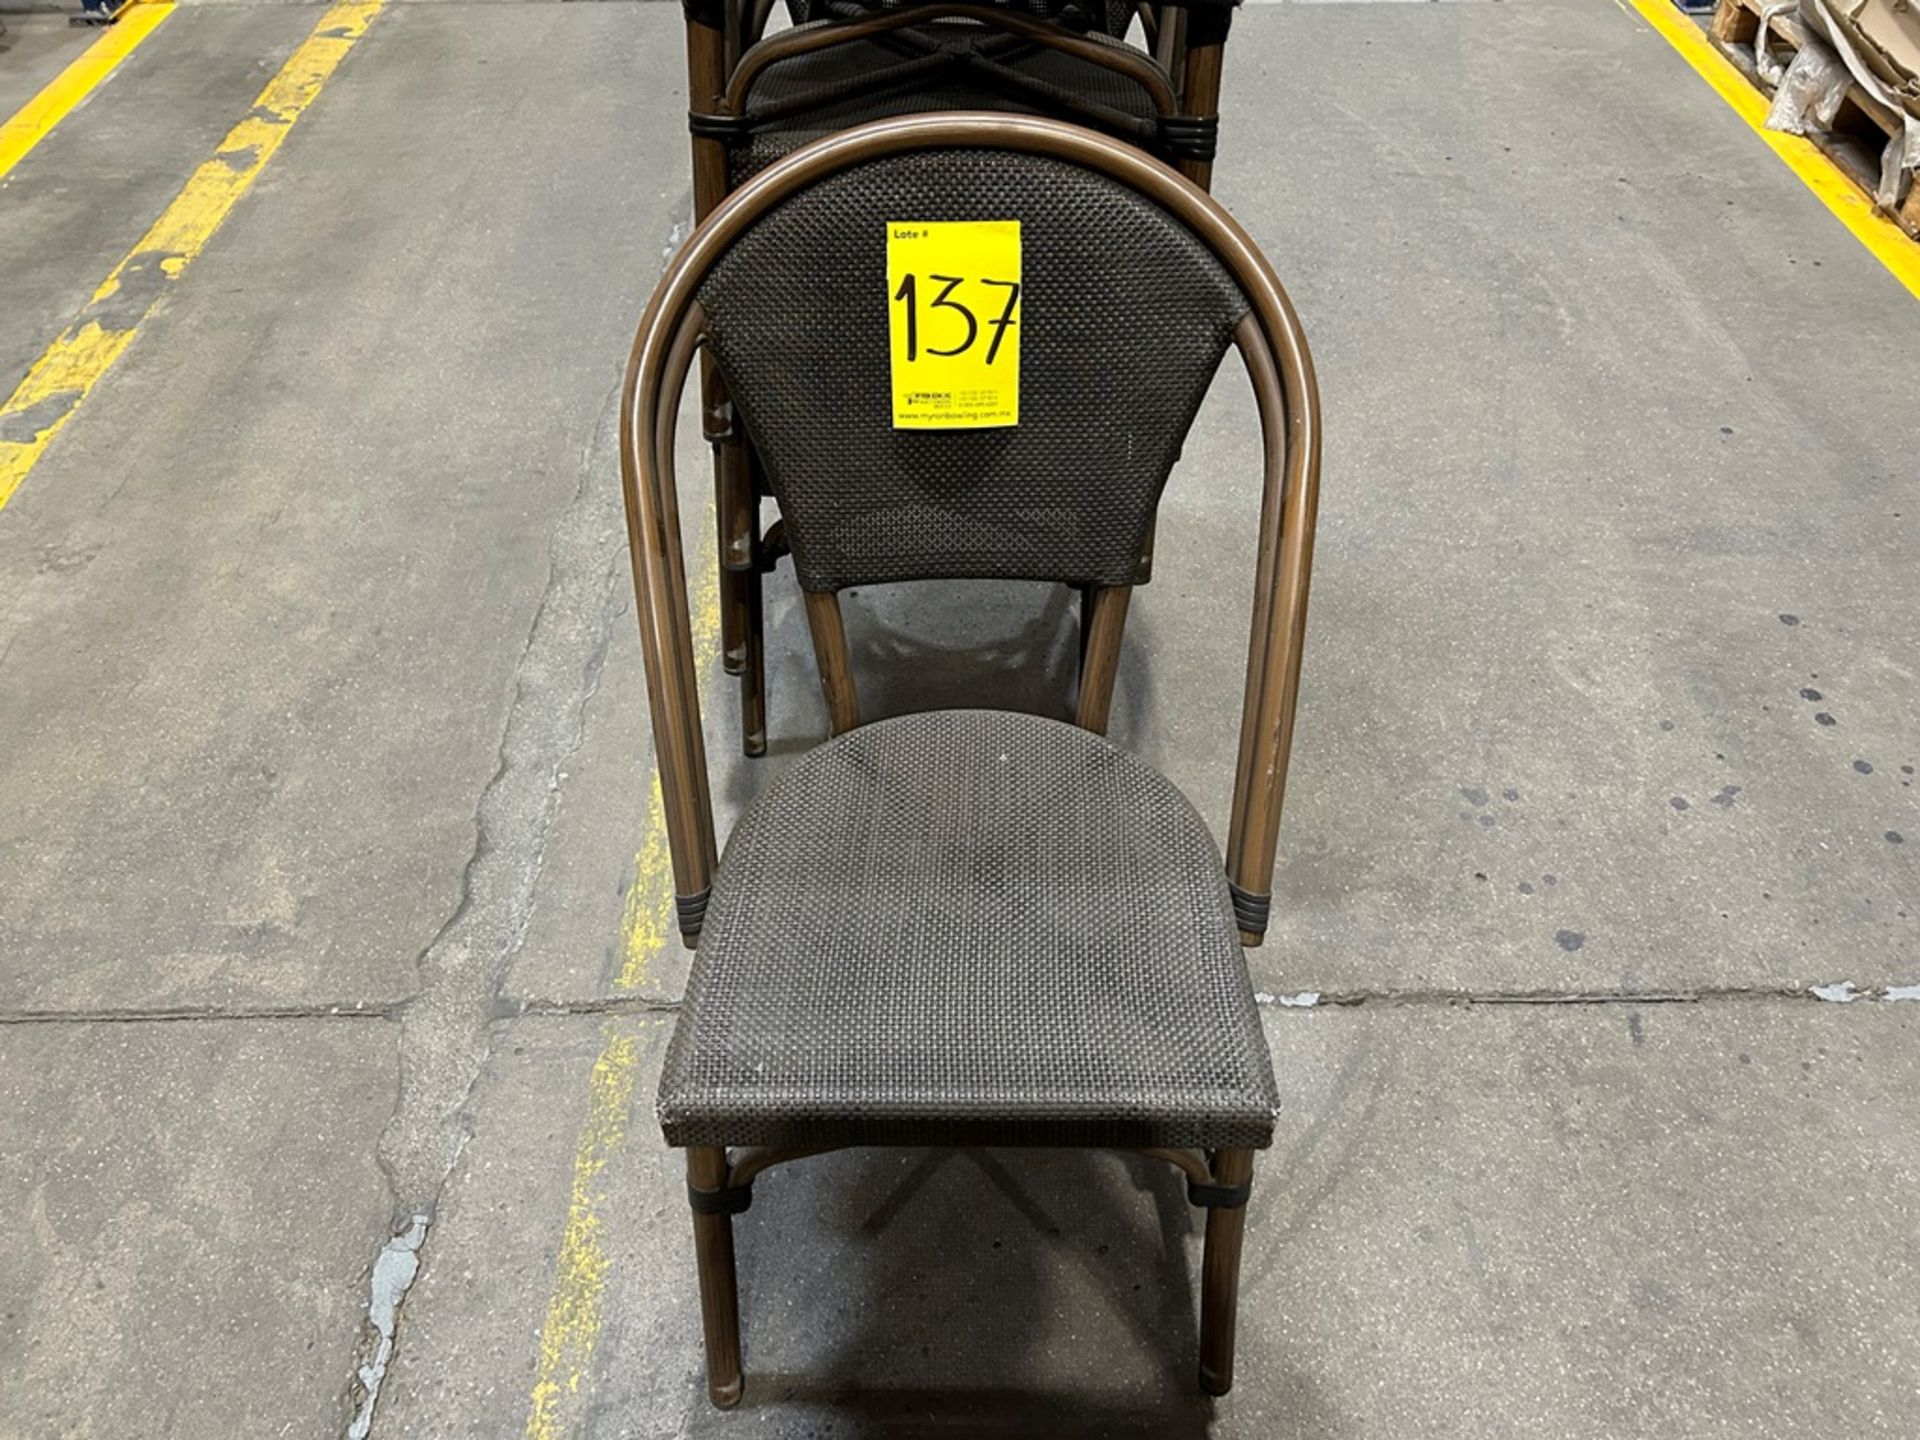 5 sillas de madera con tela tipo ratán, color café y gris (Equipo usado) - Image 4 of 5